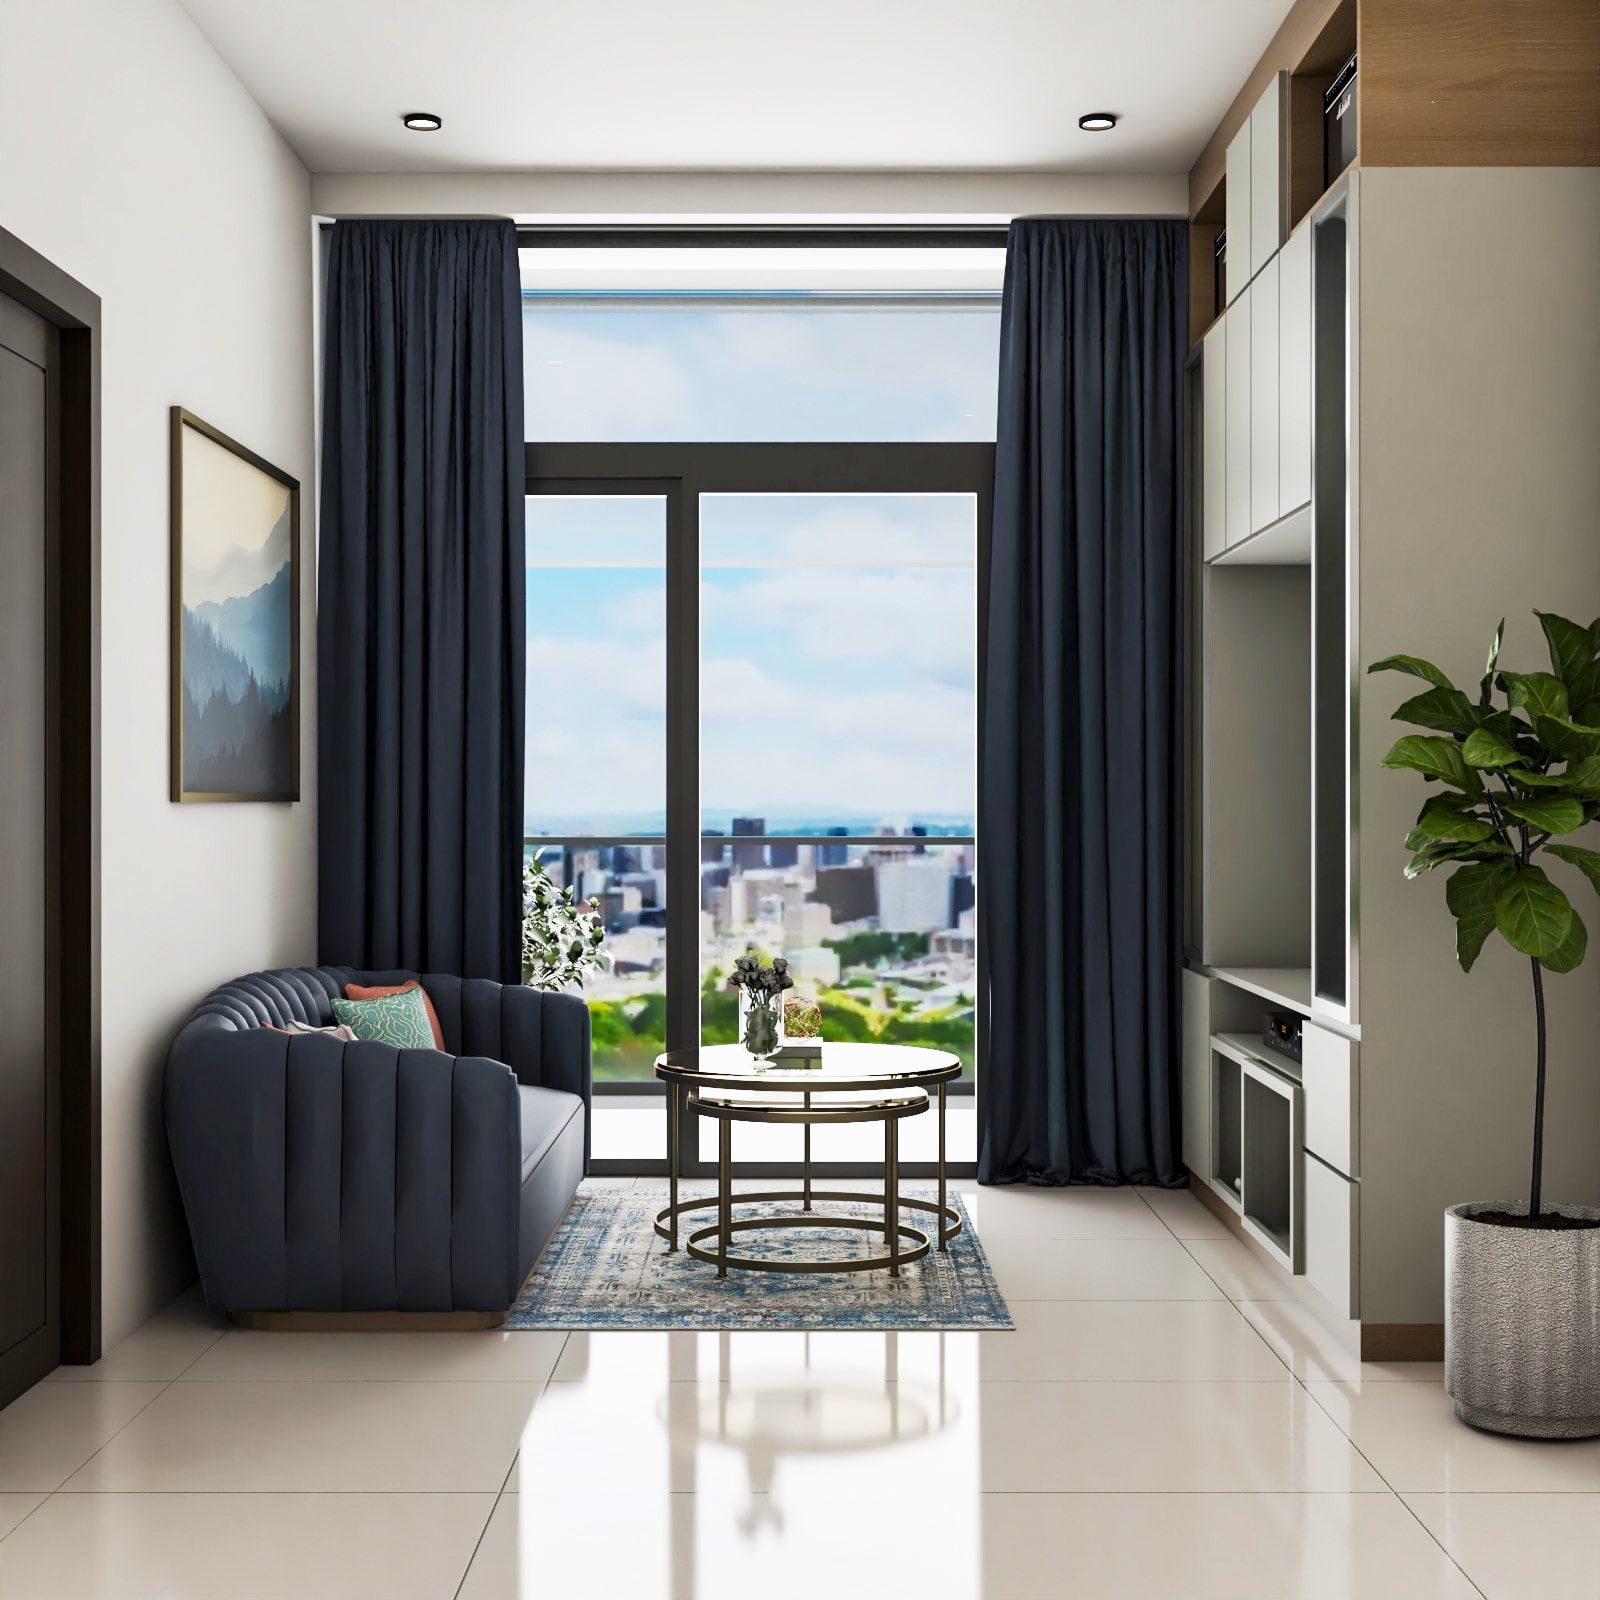 Contemporary Living Room Interior Design With Maximum Storage